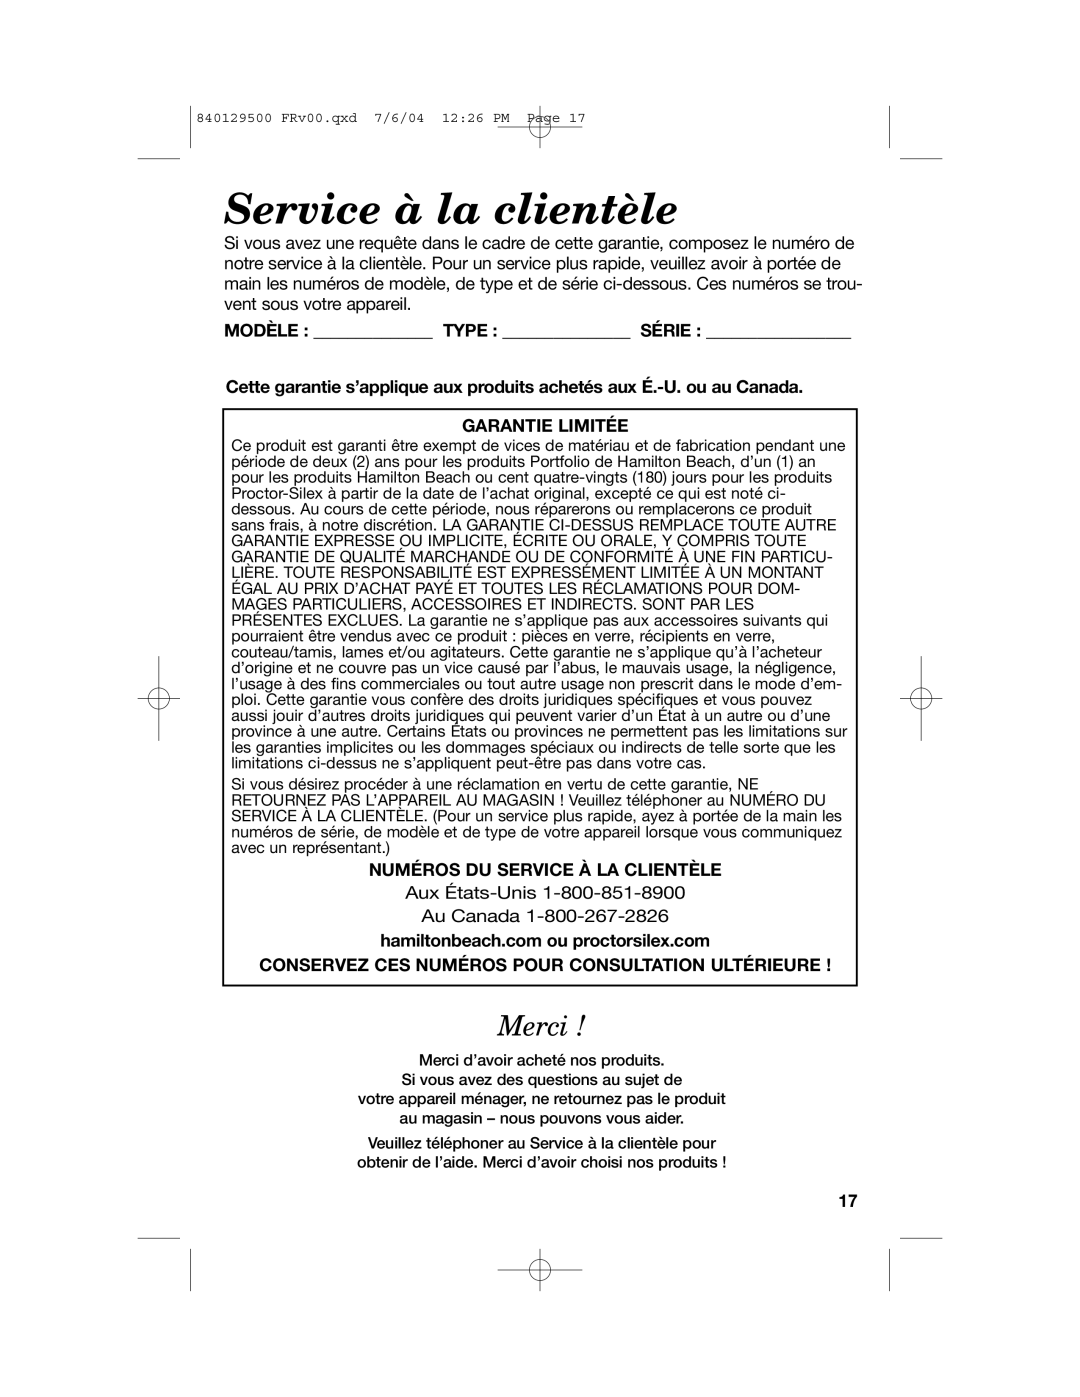 Hamilton Beach 43254 Service à la clientèle, Merci, Modèle Type Série, Garantie Limitée, Numéros Du Service À La Clientèle 